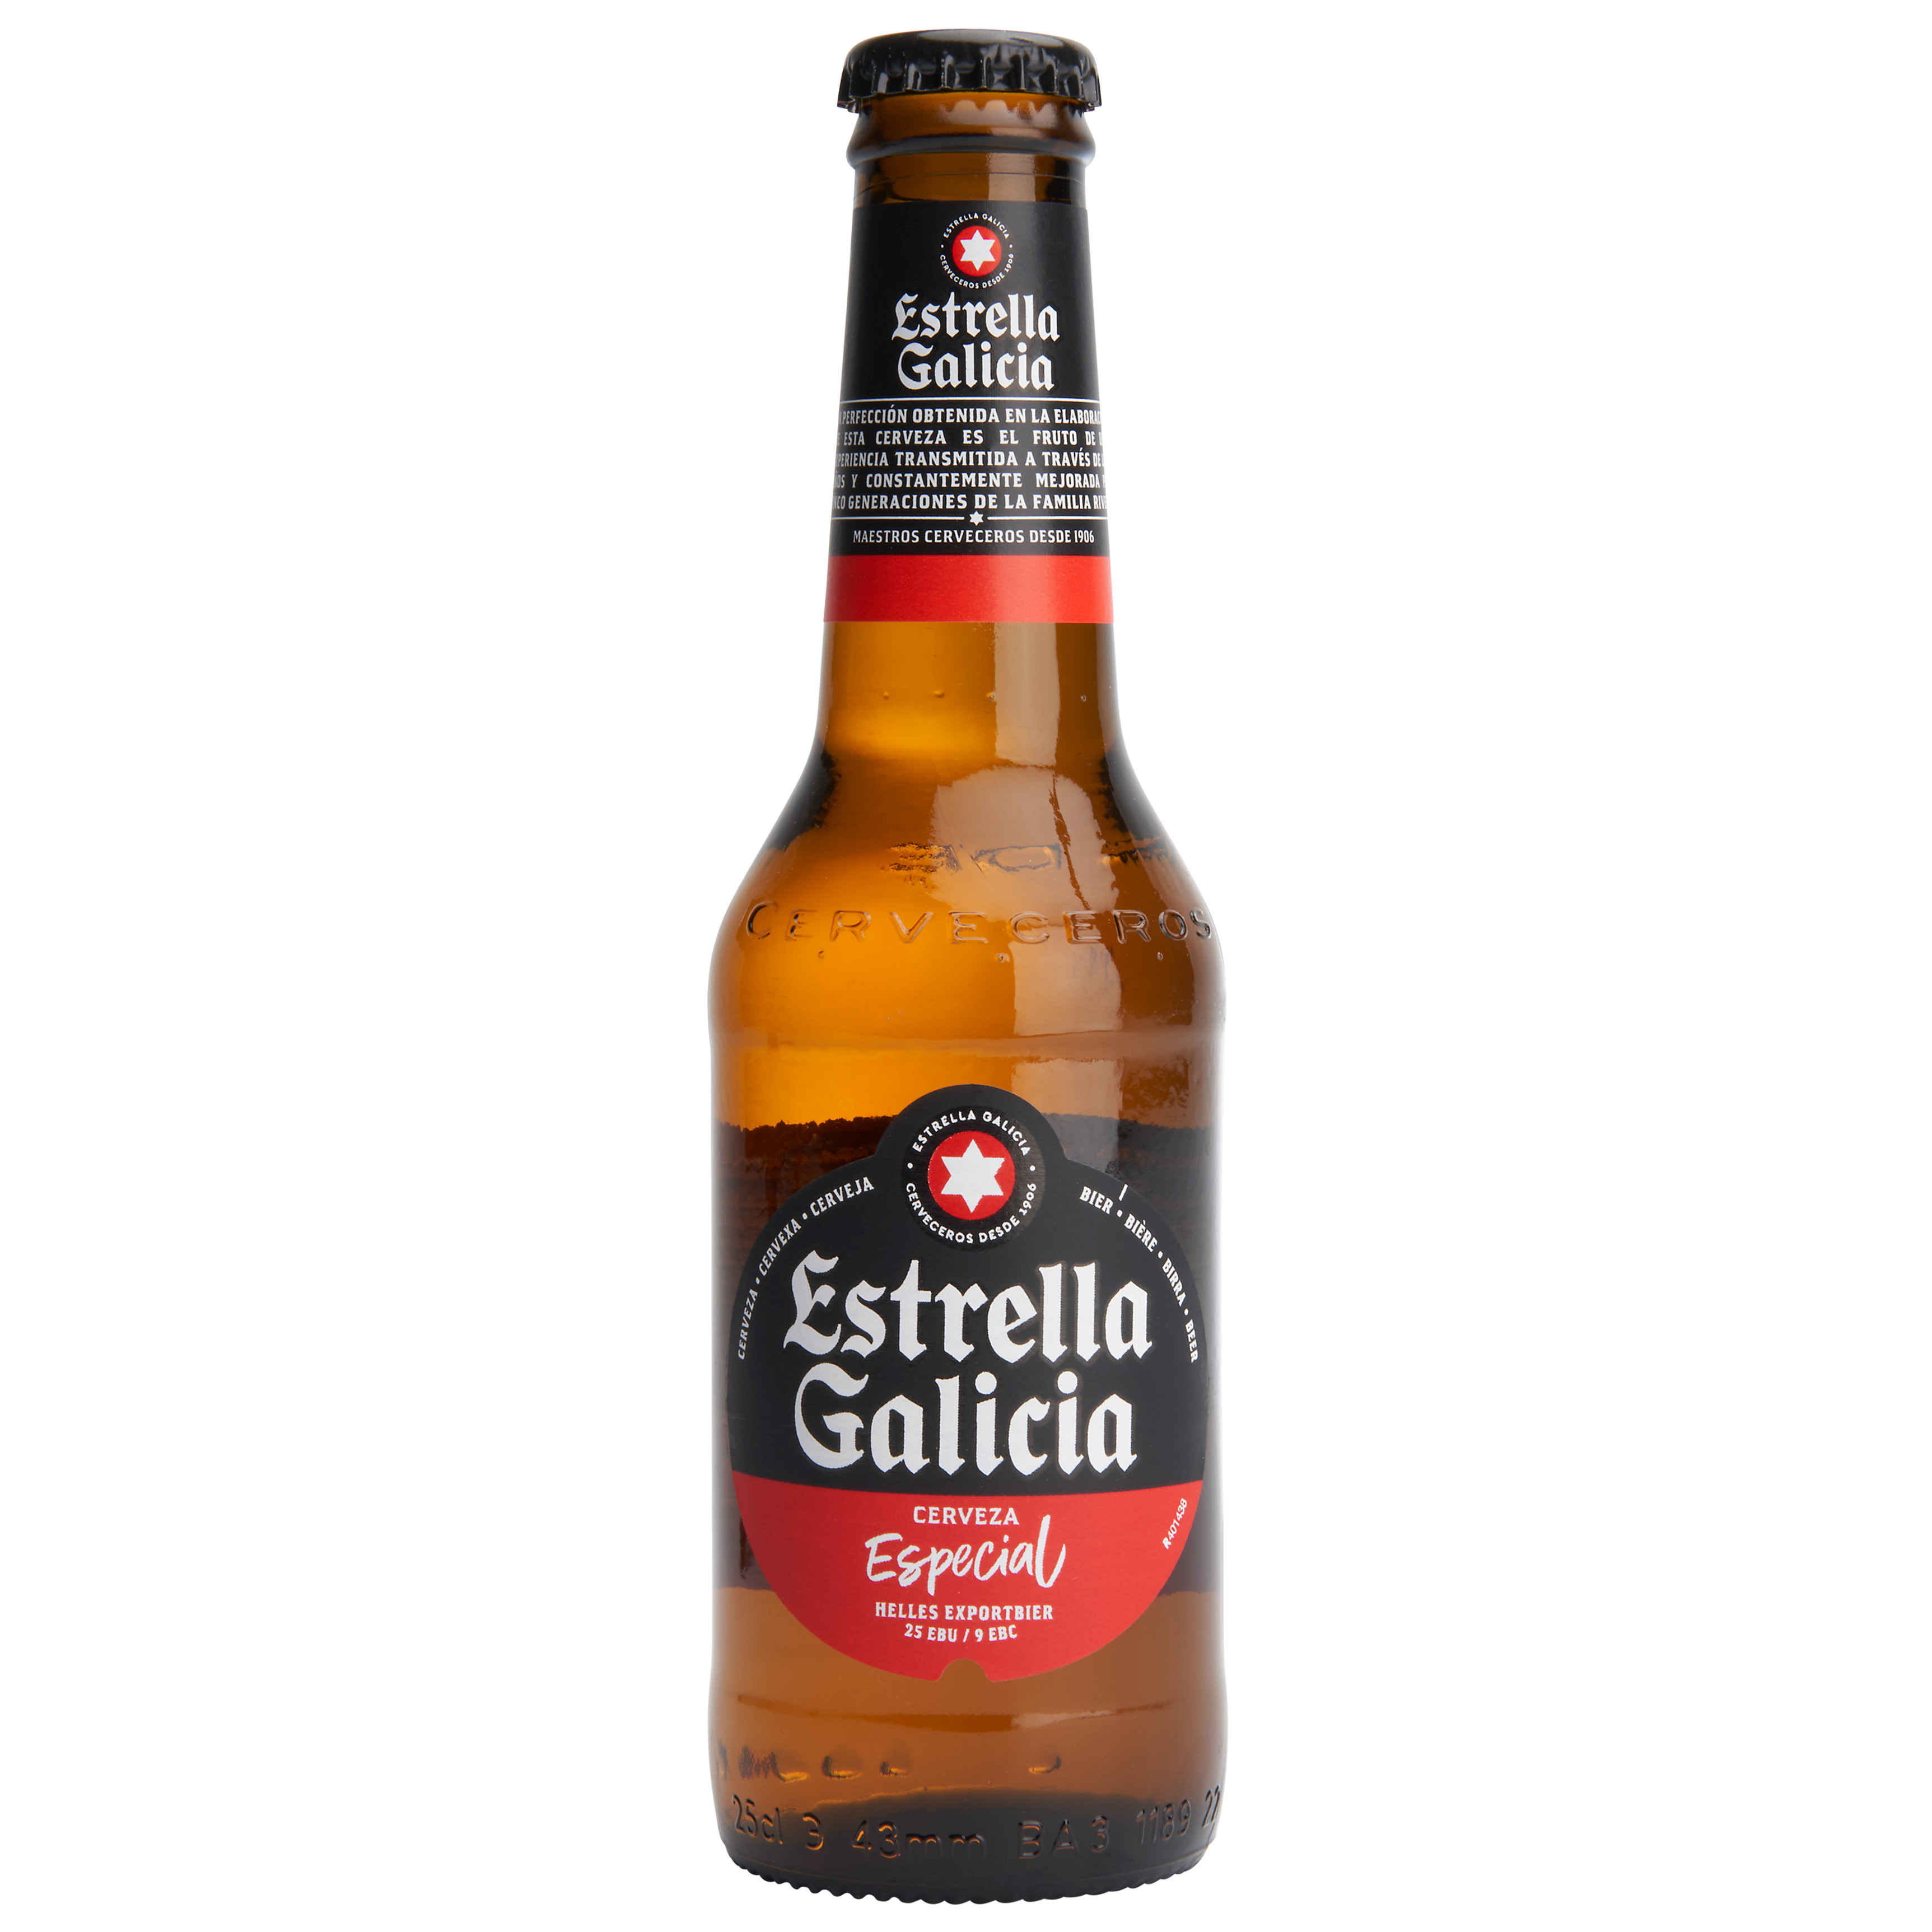 Estrella Galicia Tray 4x6x25 cl 5,5%